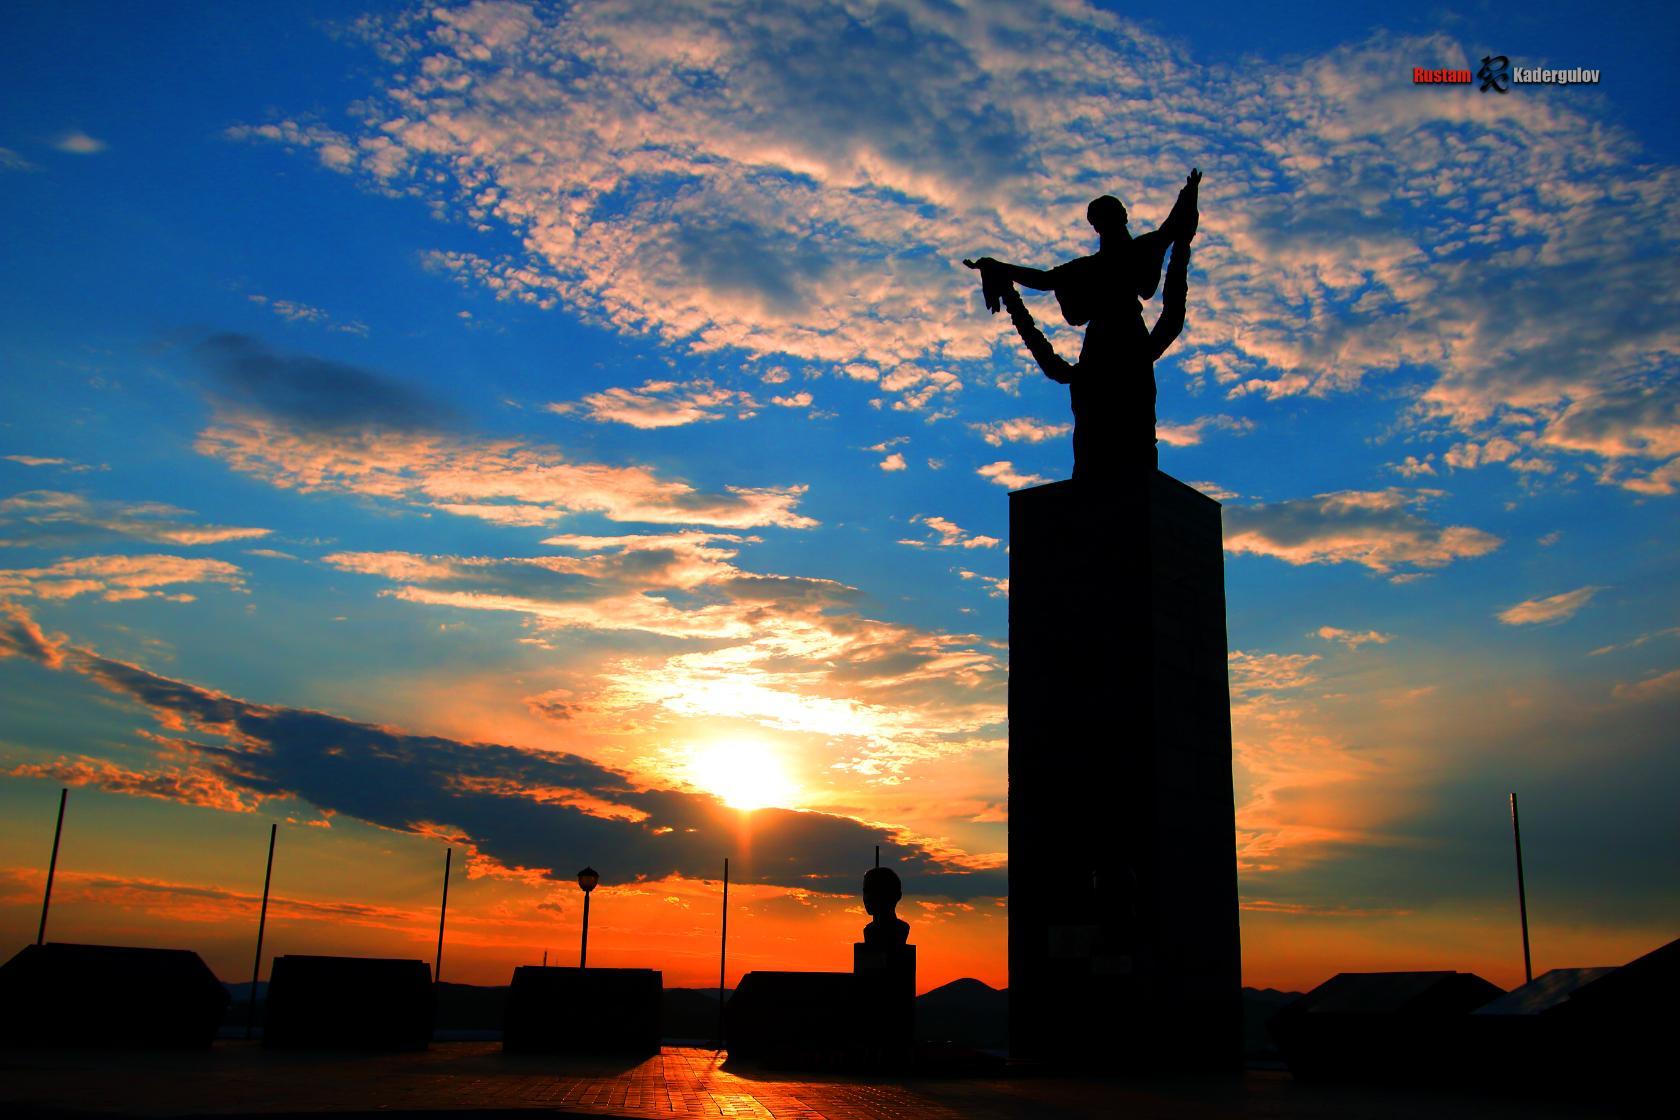 Оренбургская область, Кувандык, малые города, Холм Славы, Великая Отечественная война, Великая Победа